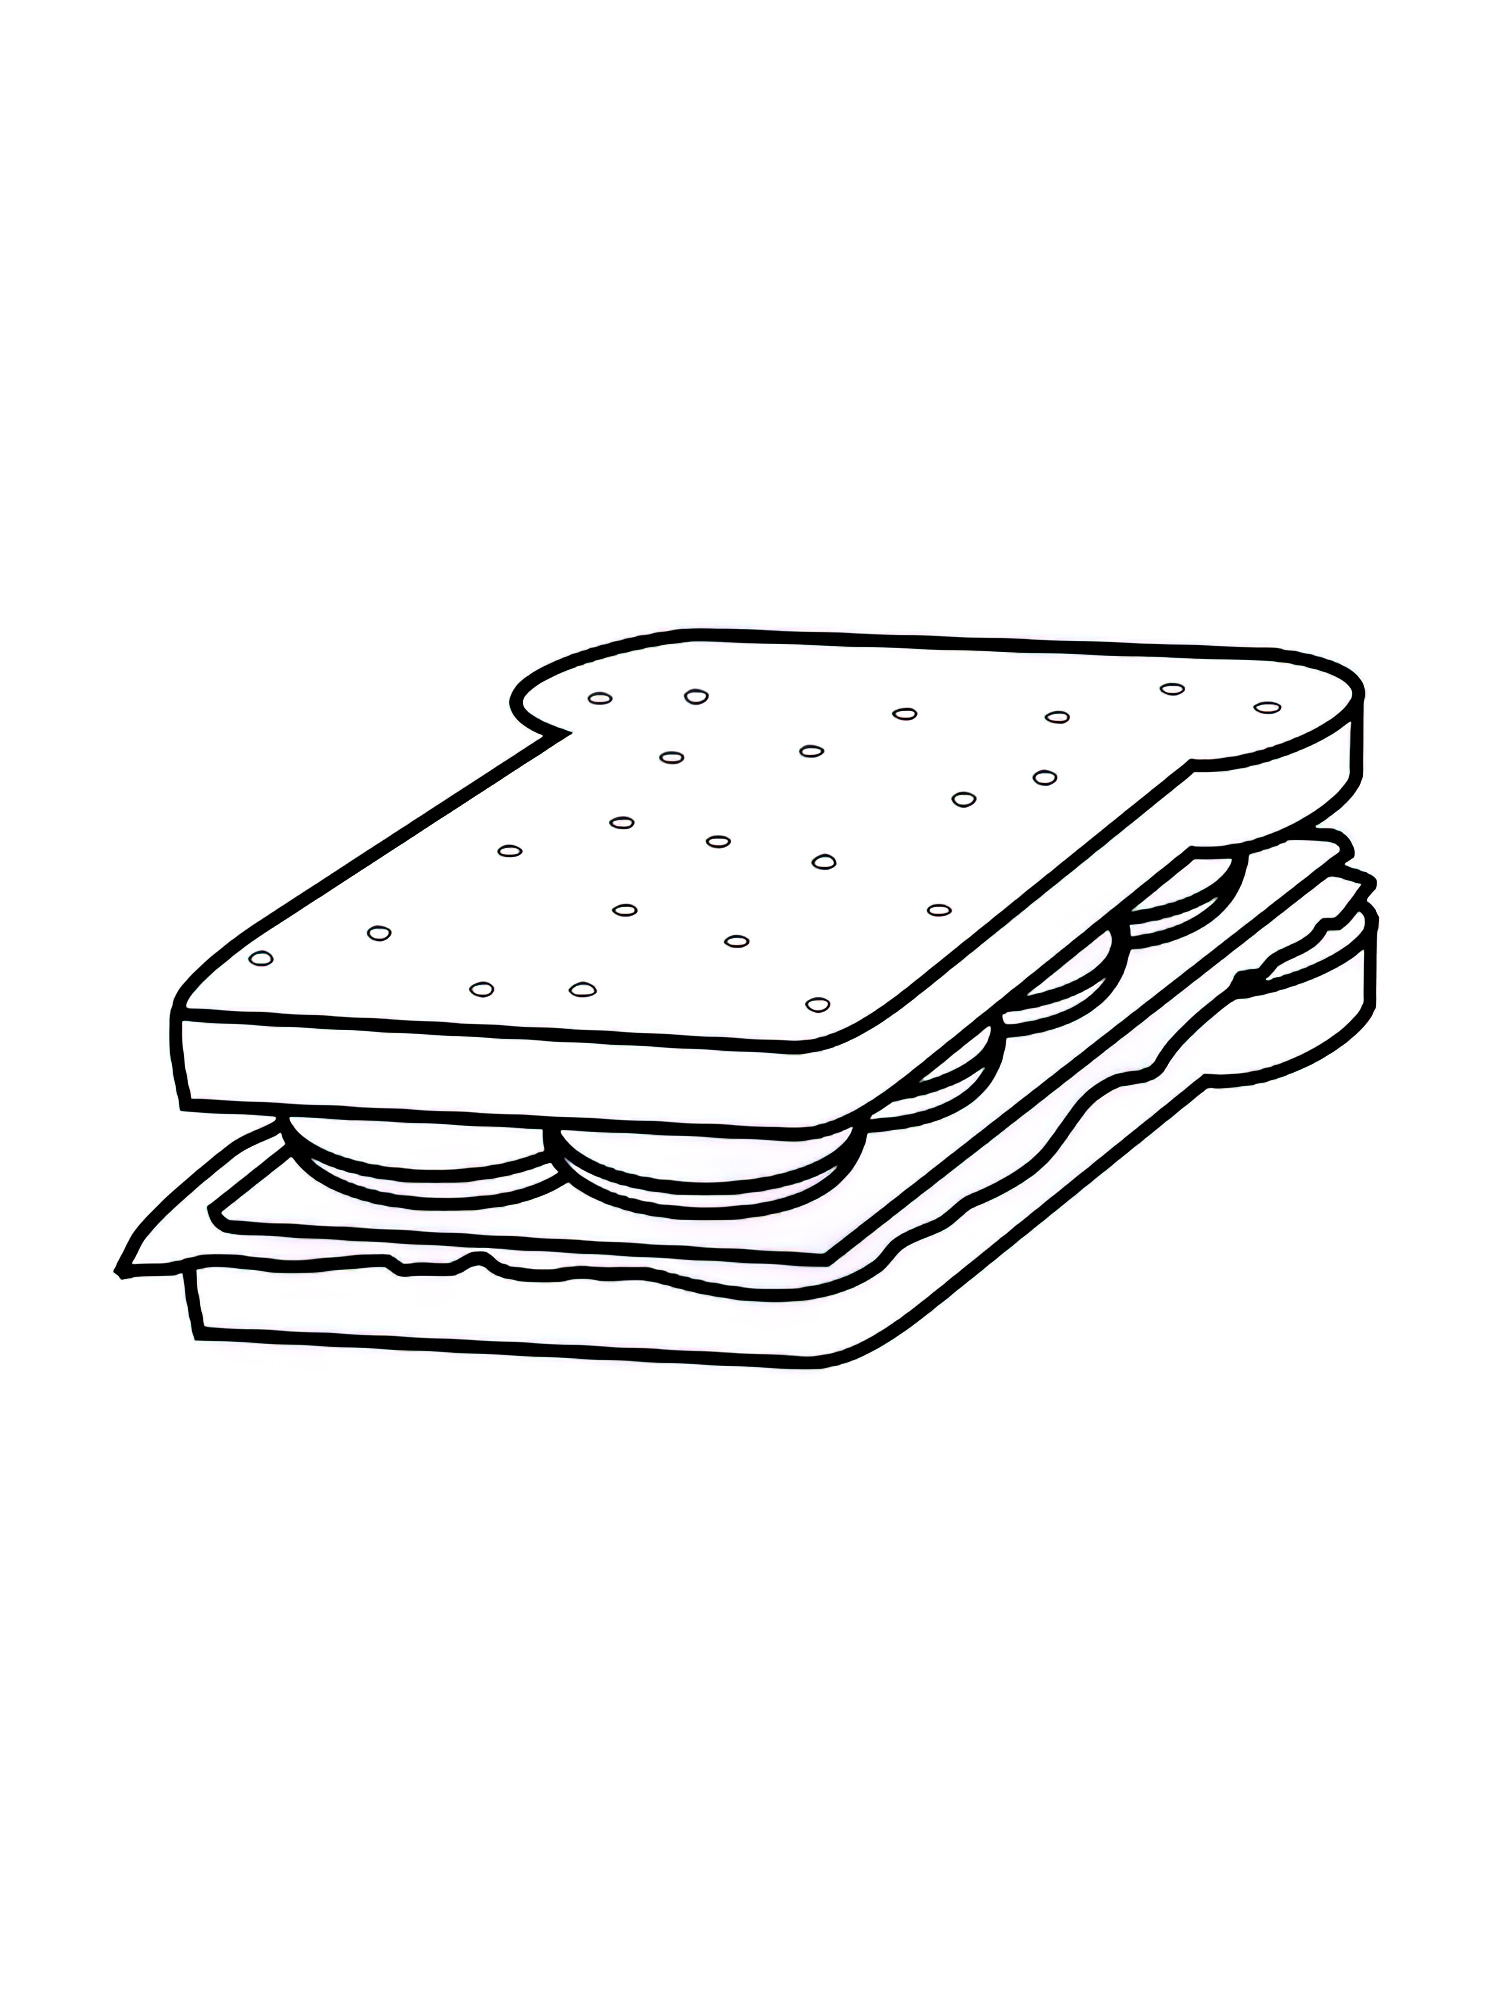 דף צביעה סנדוויץ’ עם פסטרמה